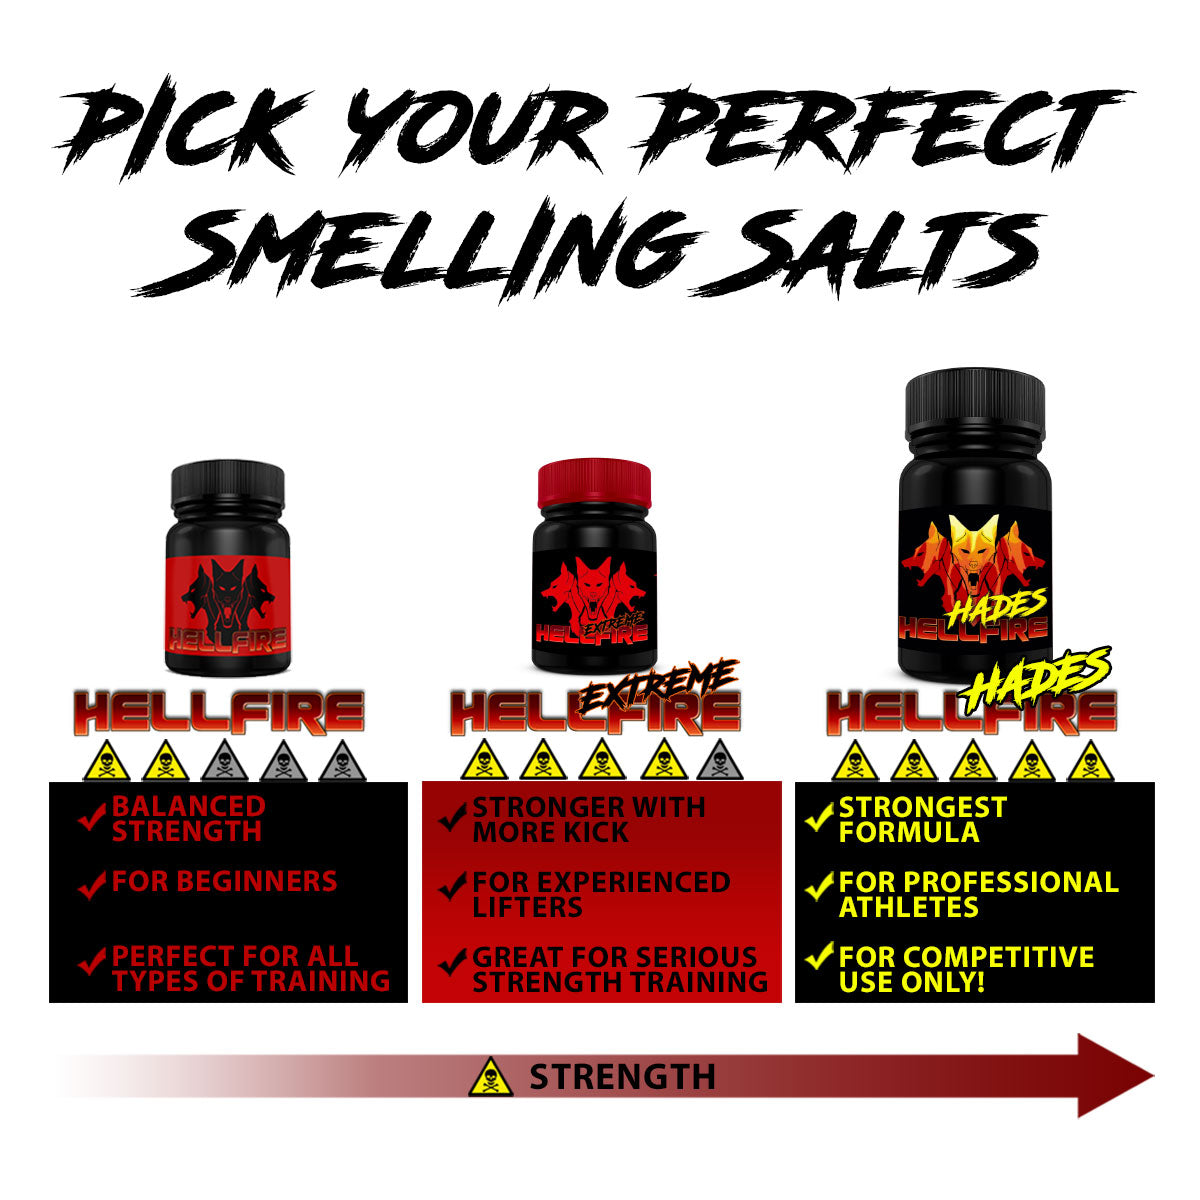 HELLFIRE Hades V2 Smelling Salts